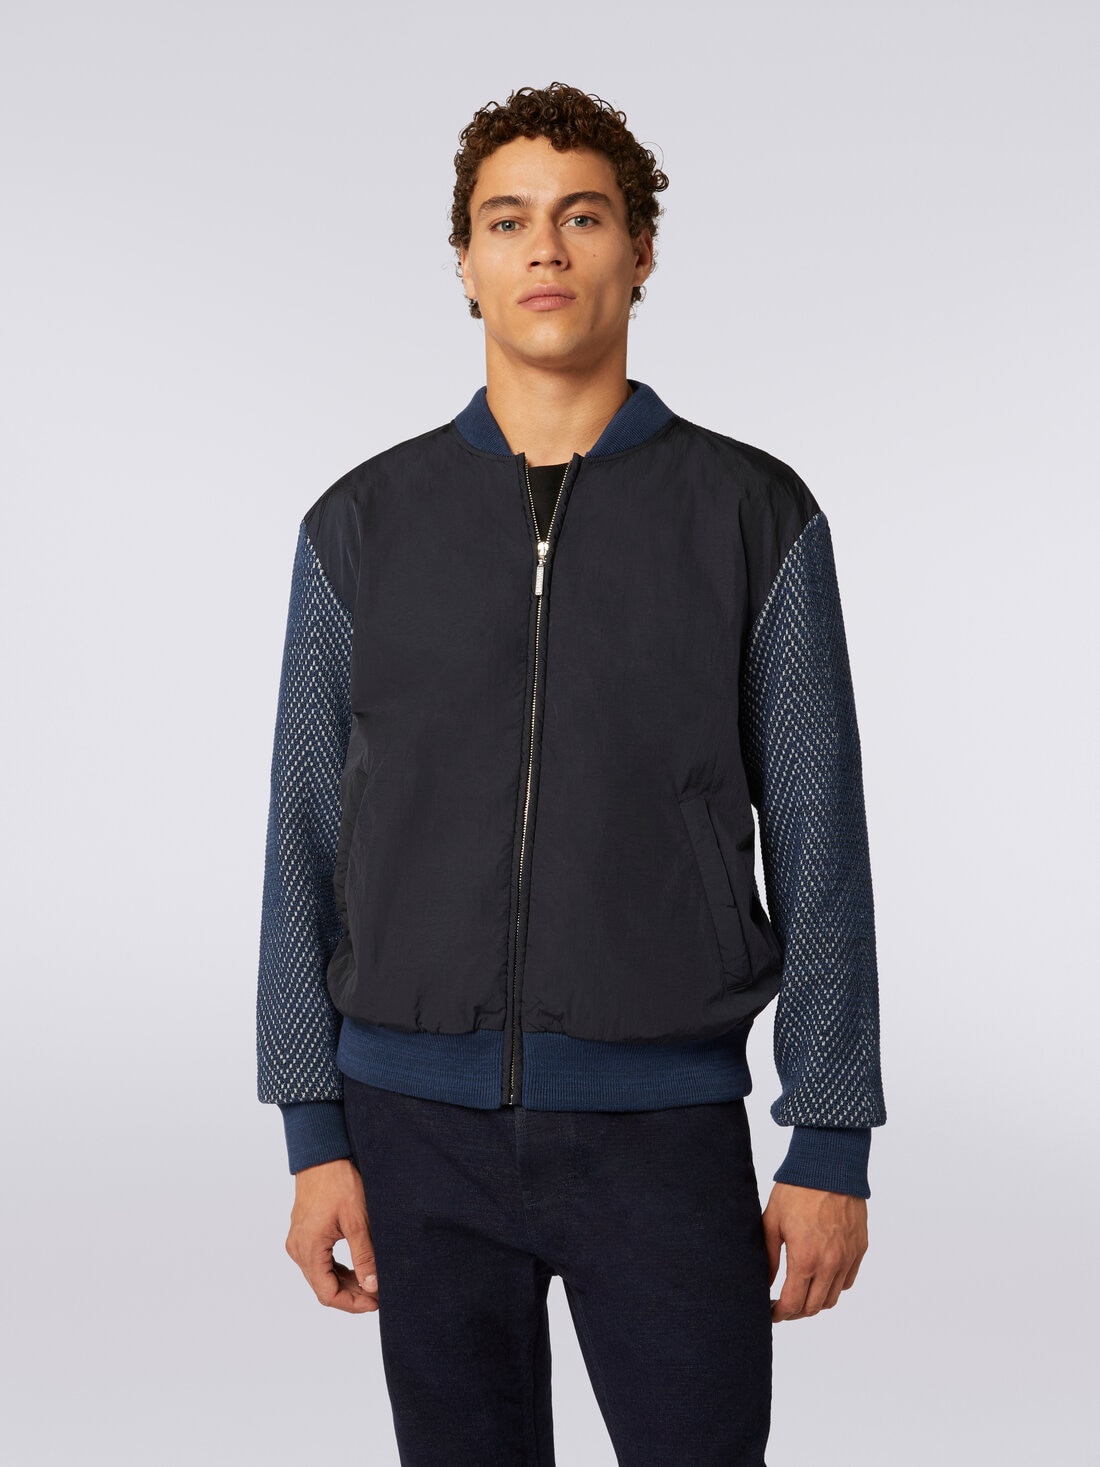 Cotton and nylon blend bomber jacket, Blue & Grey  - US23WC0ZBK030SSM96A - 4